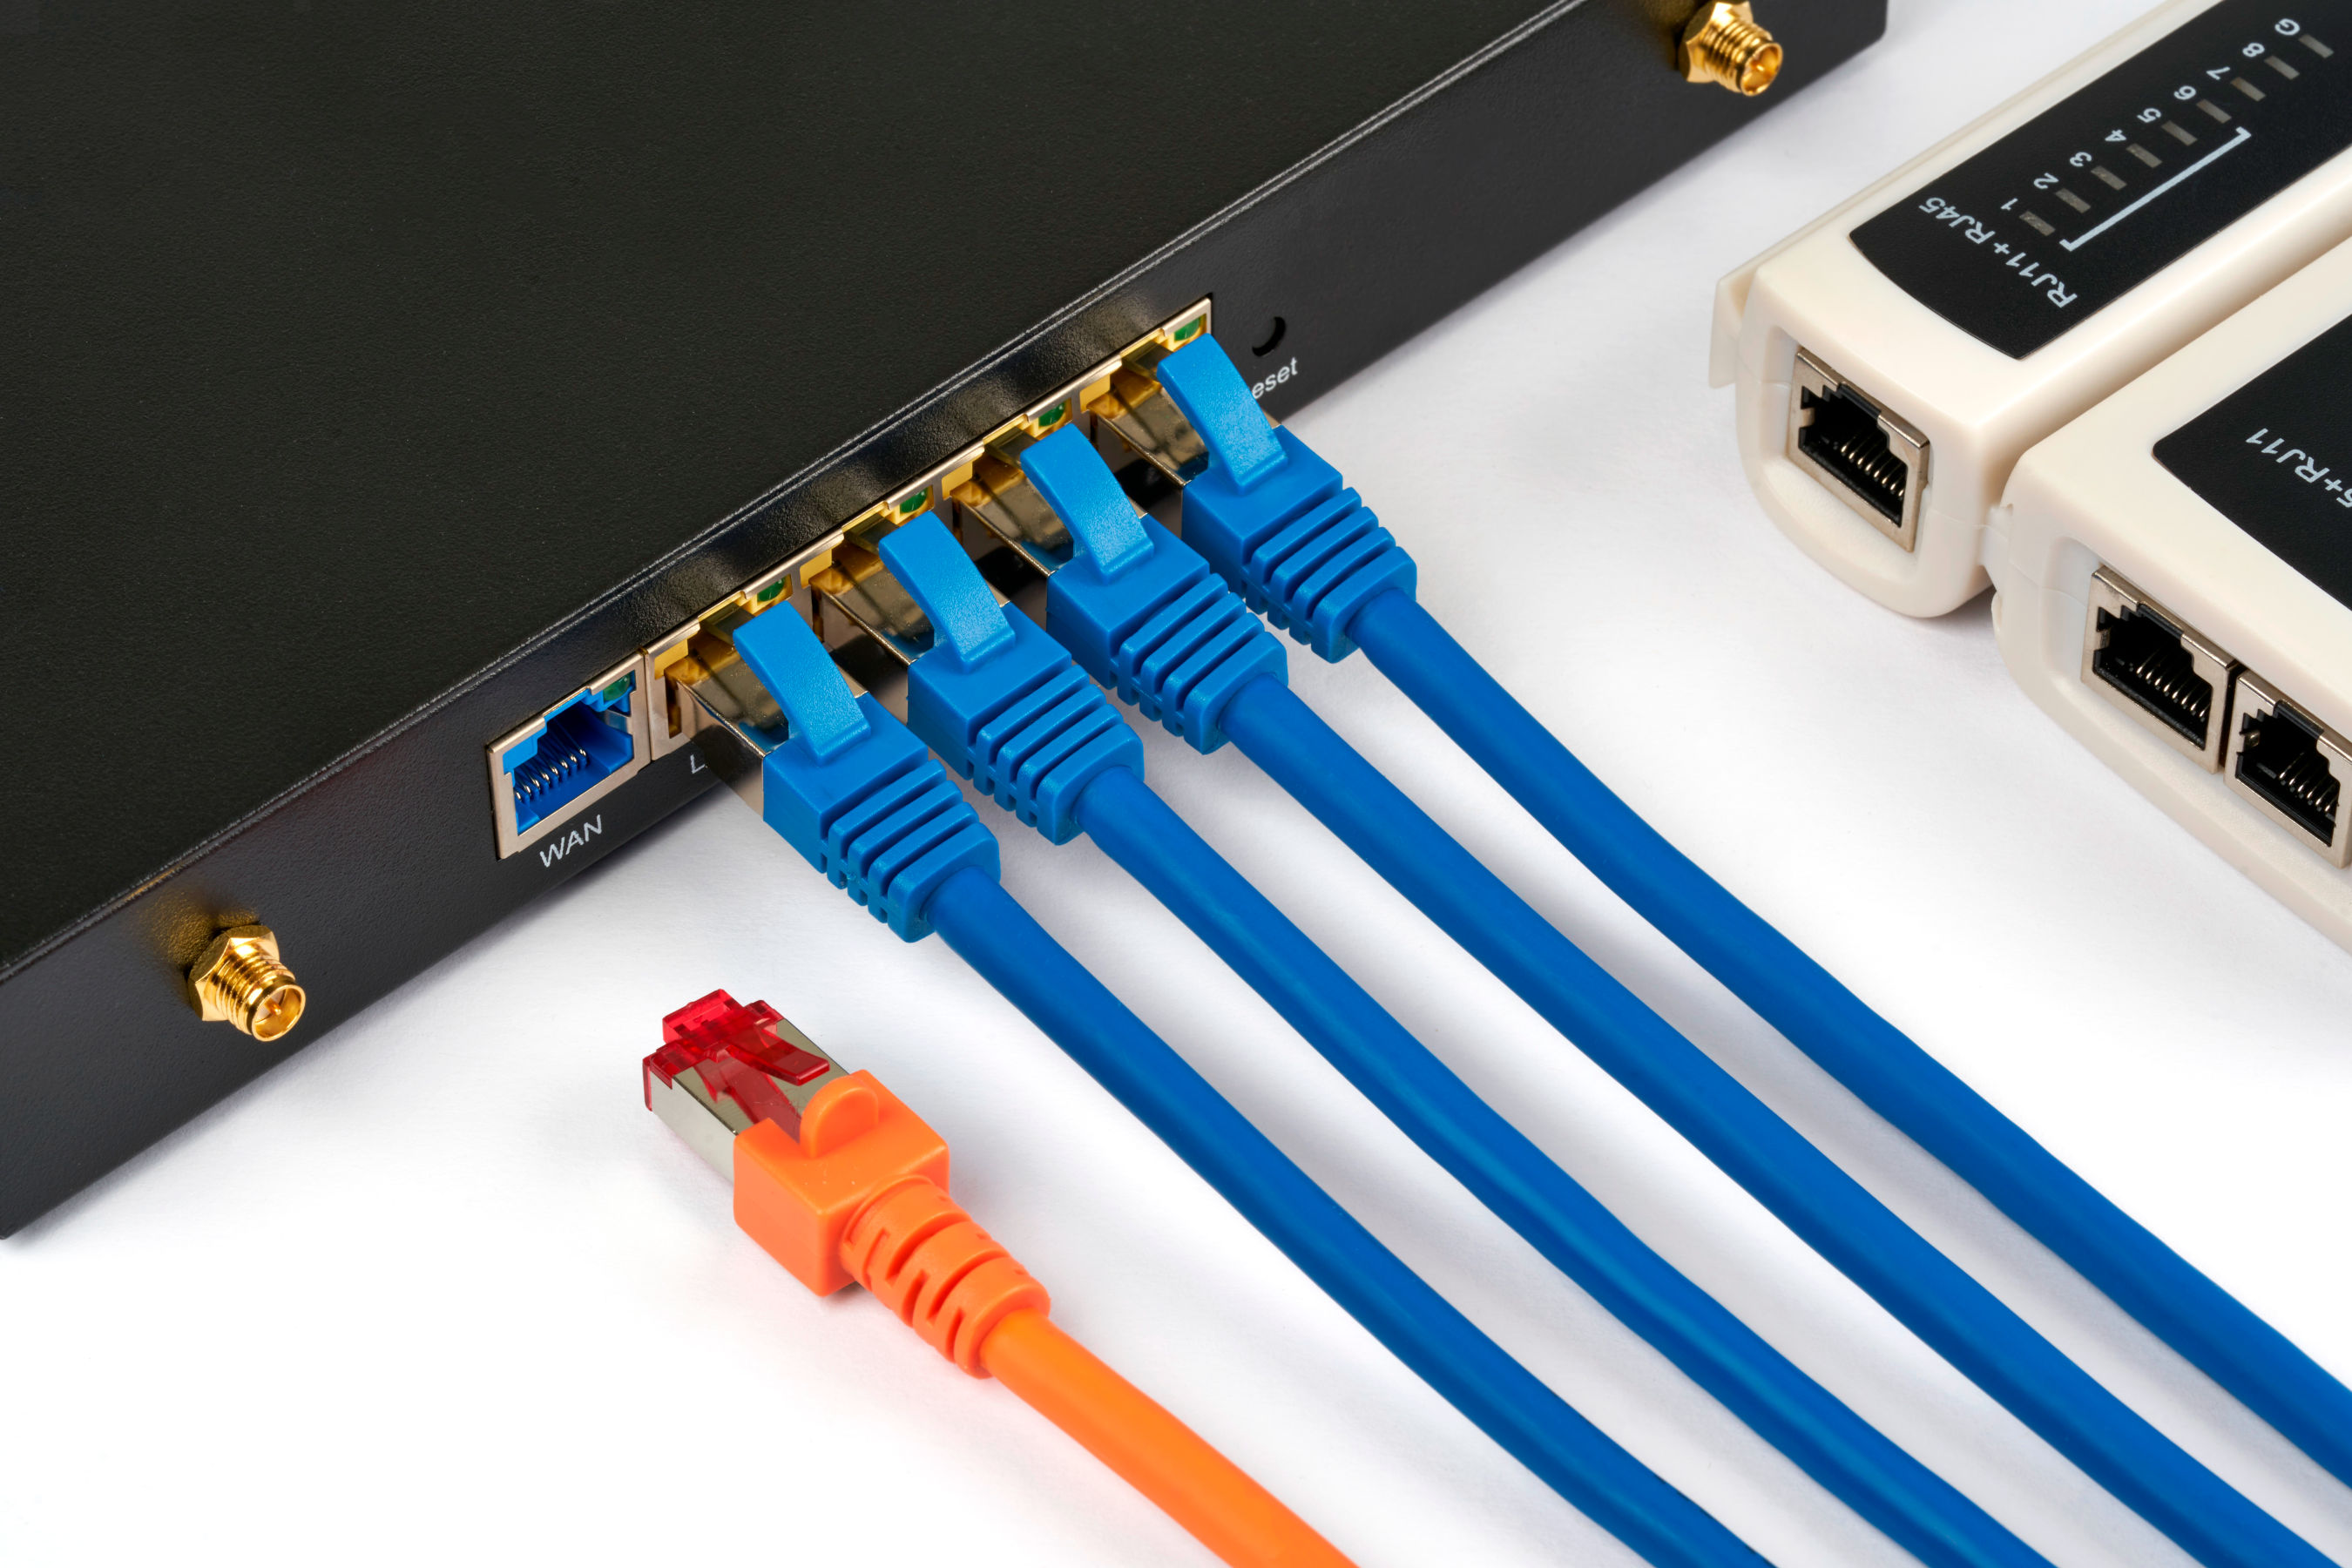 Netzwerk-Switch mit angeschlossenen blauen Netzwerkkabeln und einem orangefarbenen Netzwerkkabel.